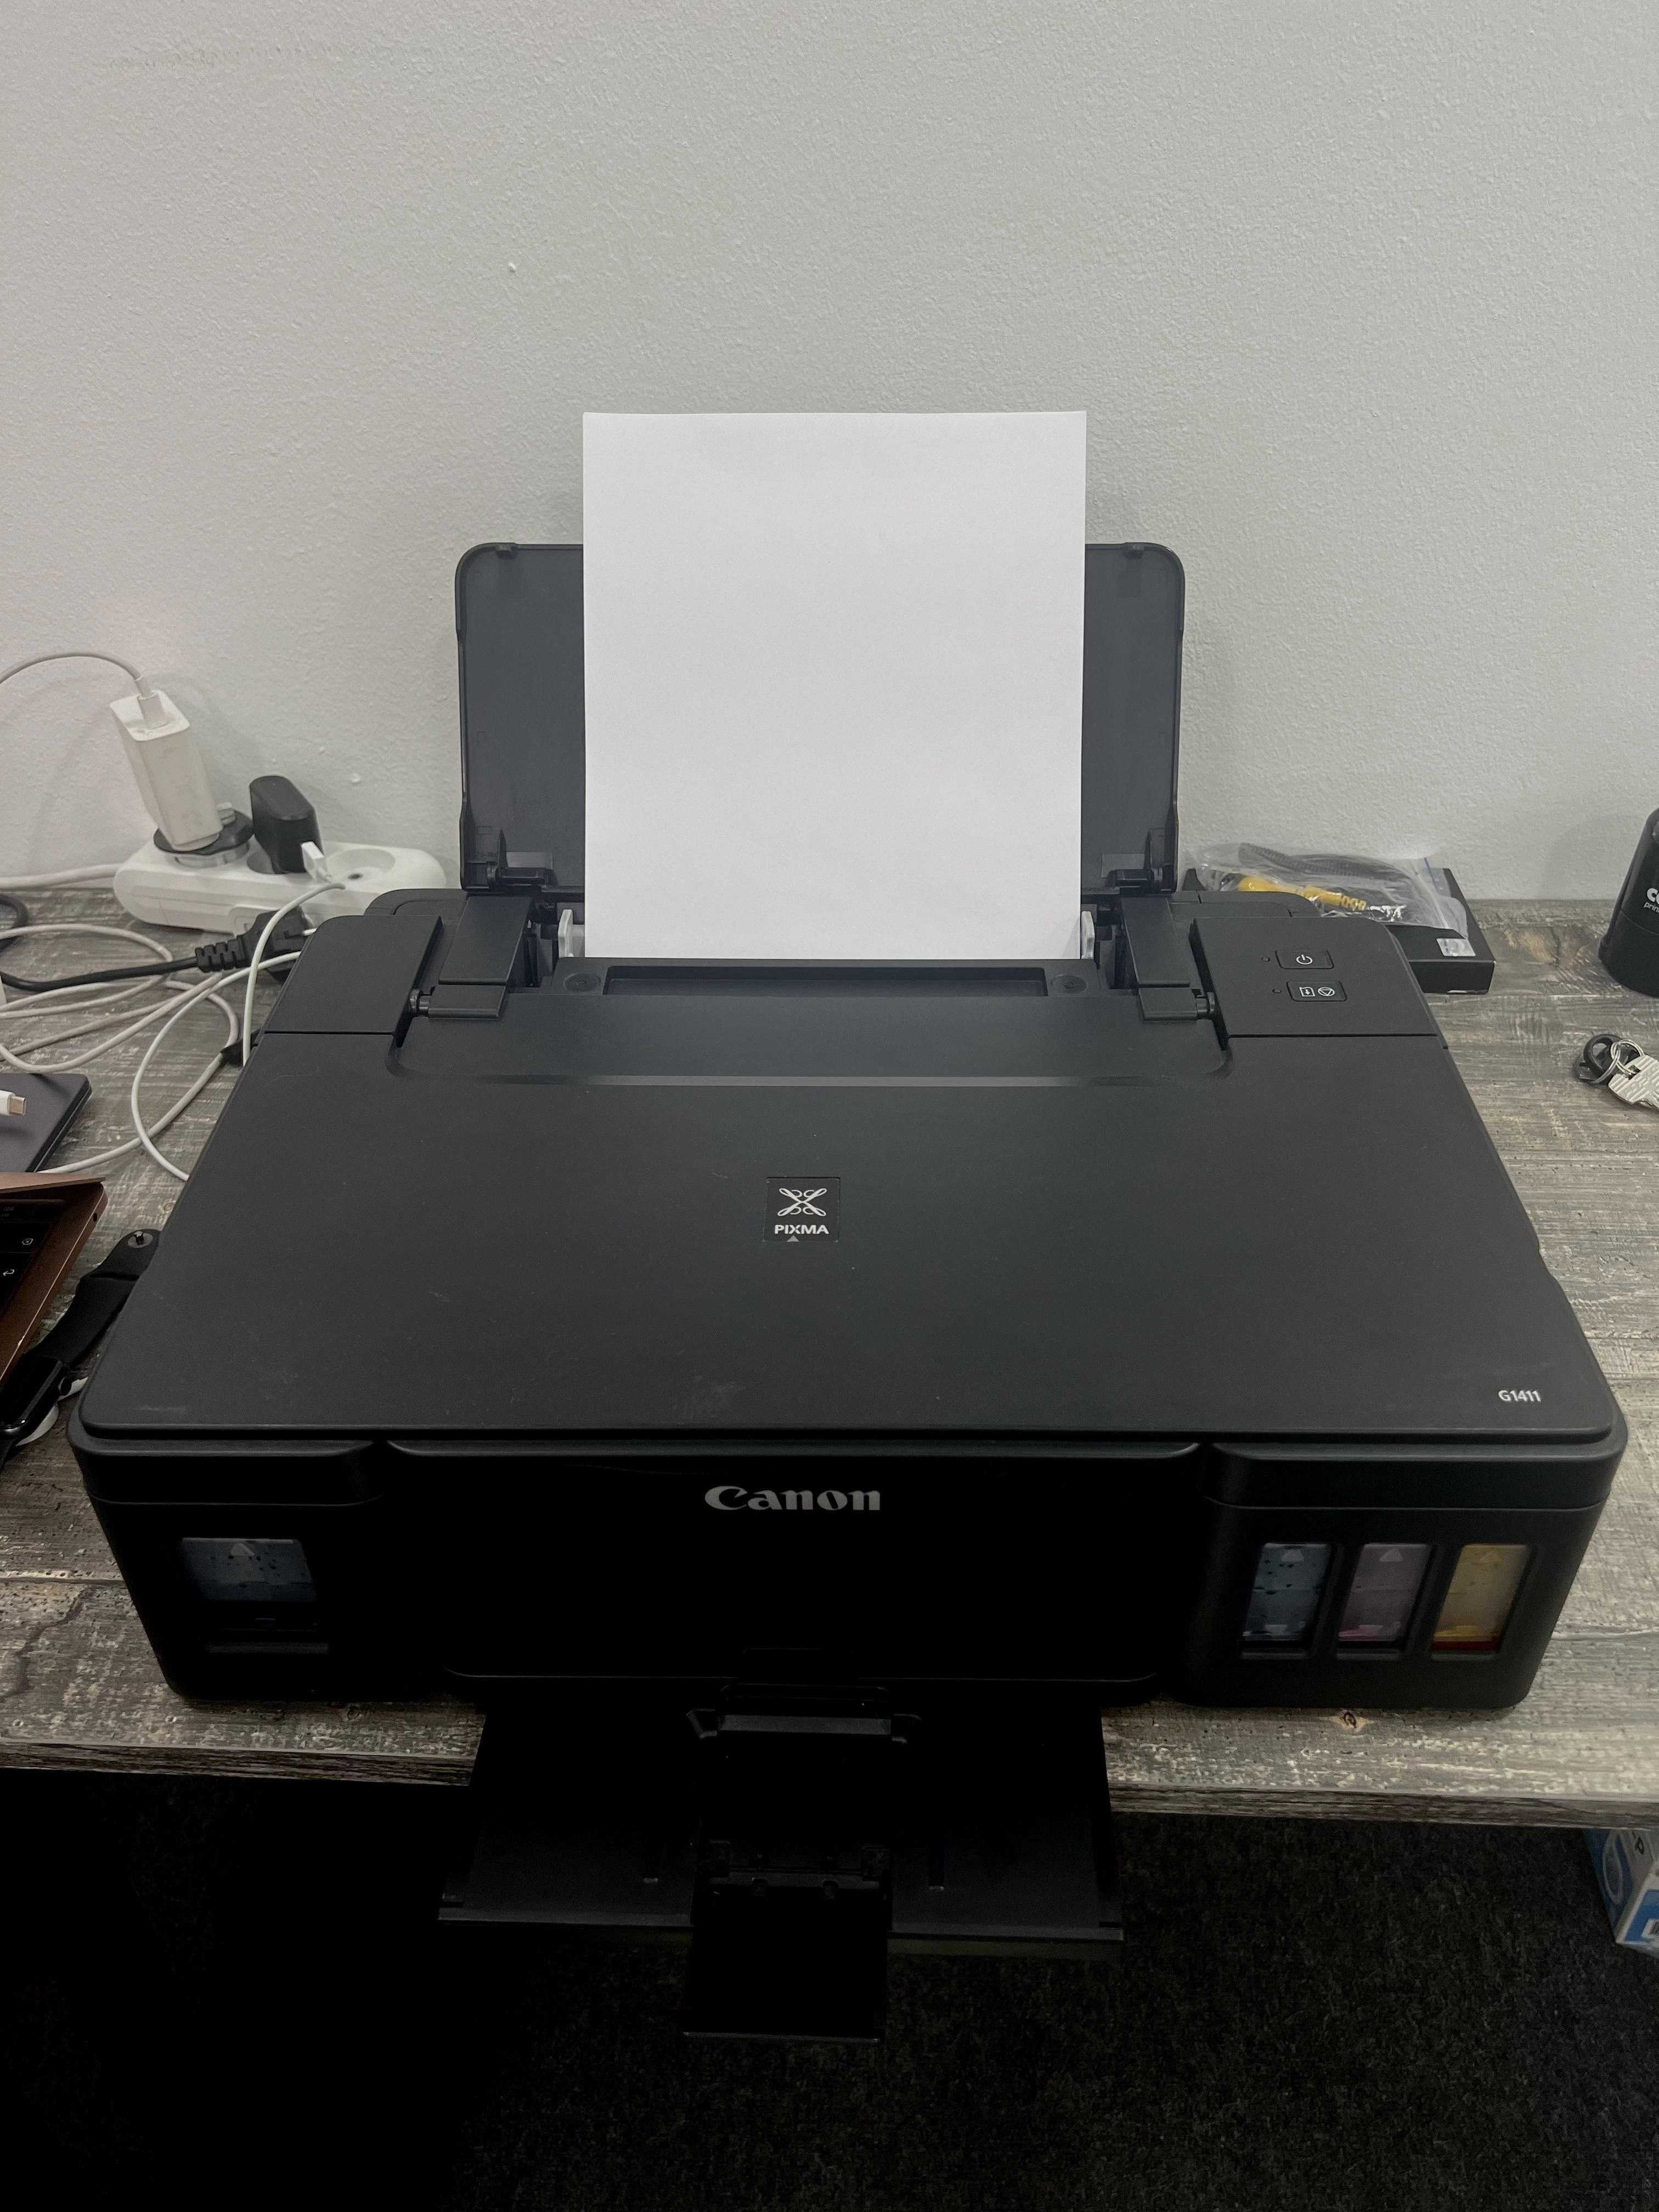 Принтер Canon Pixma G1411